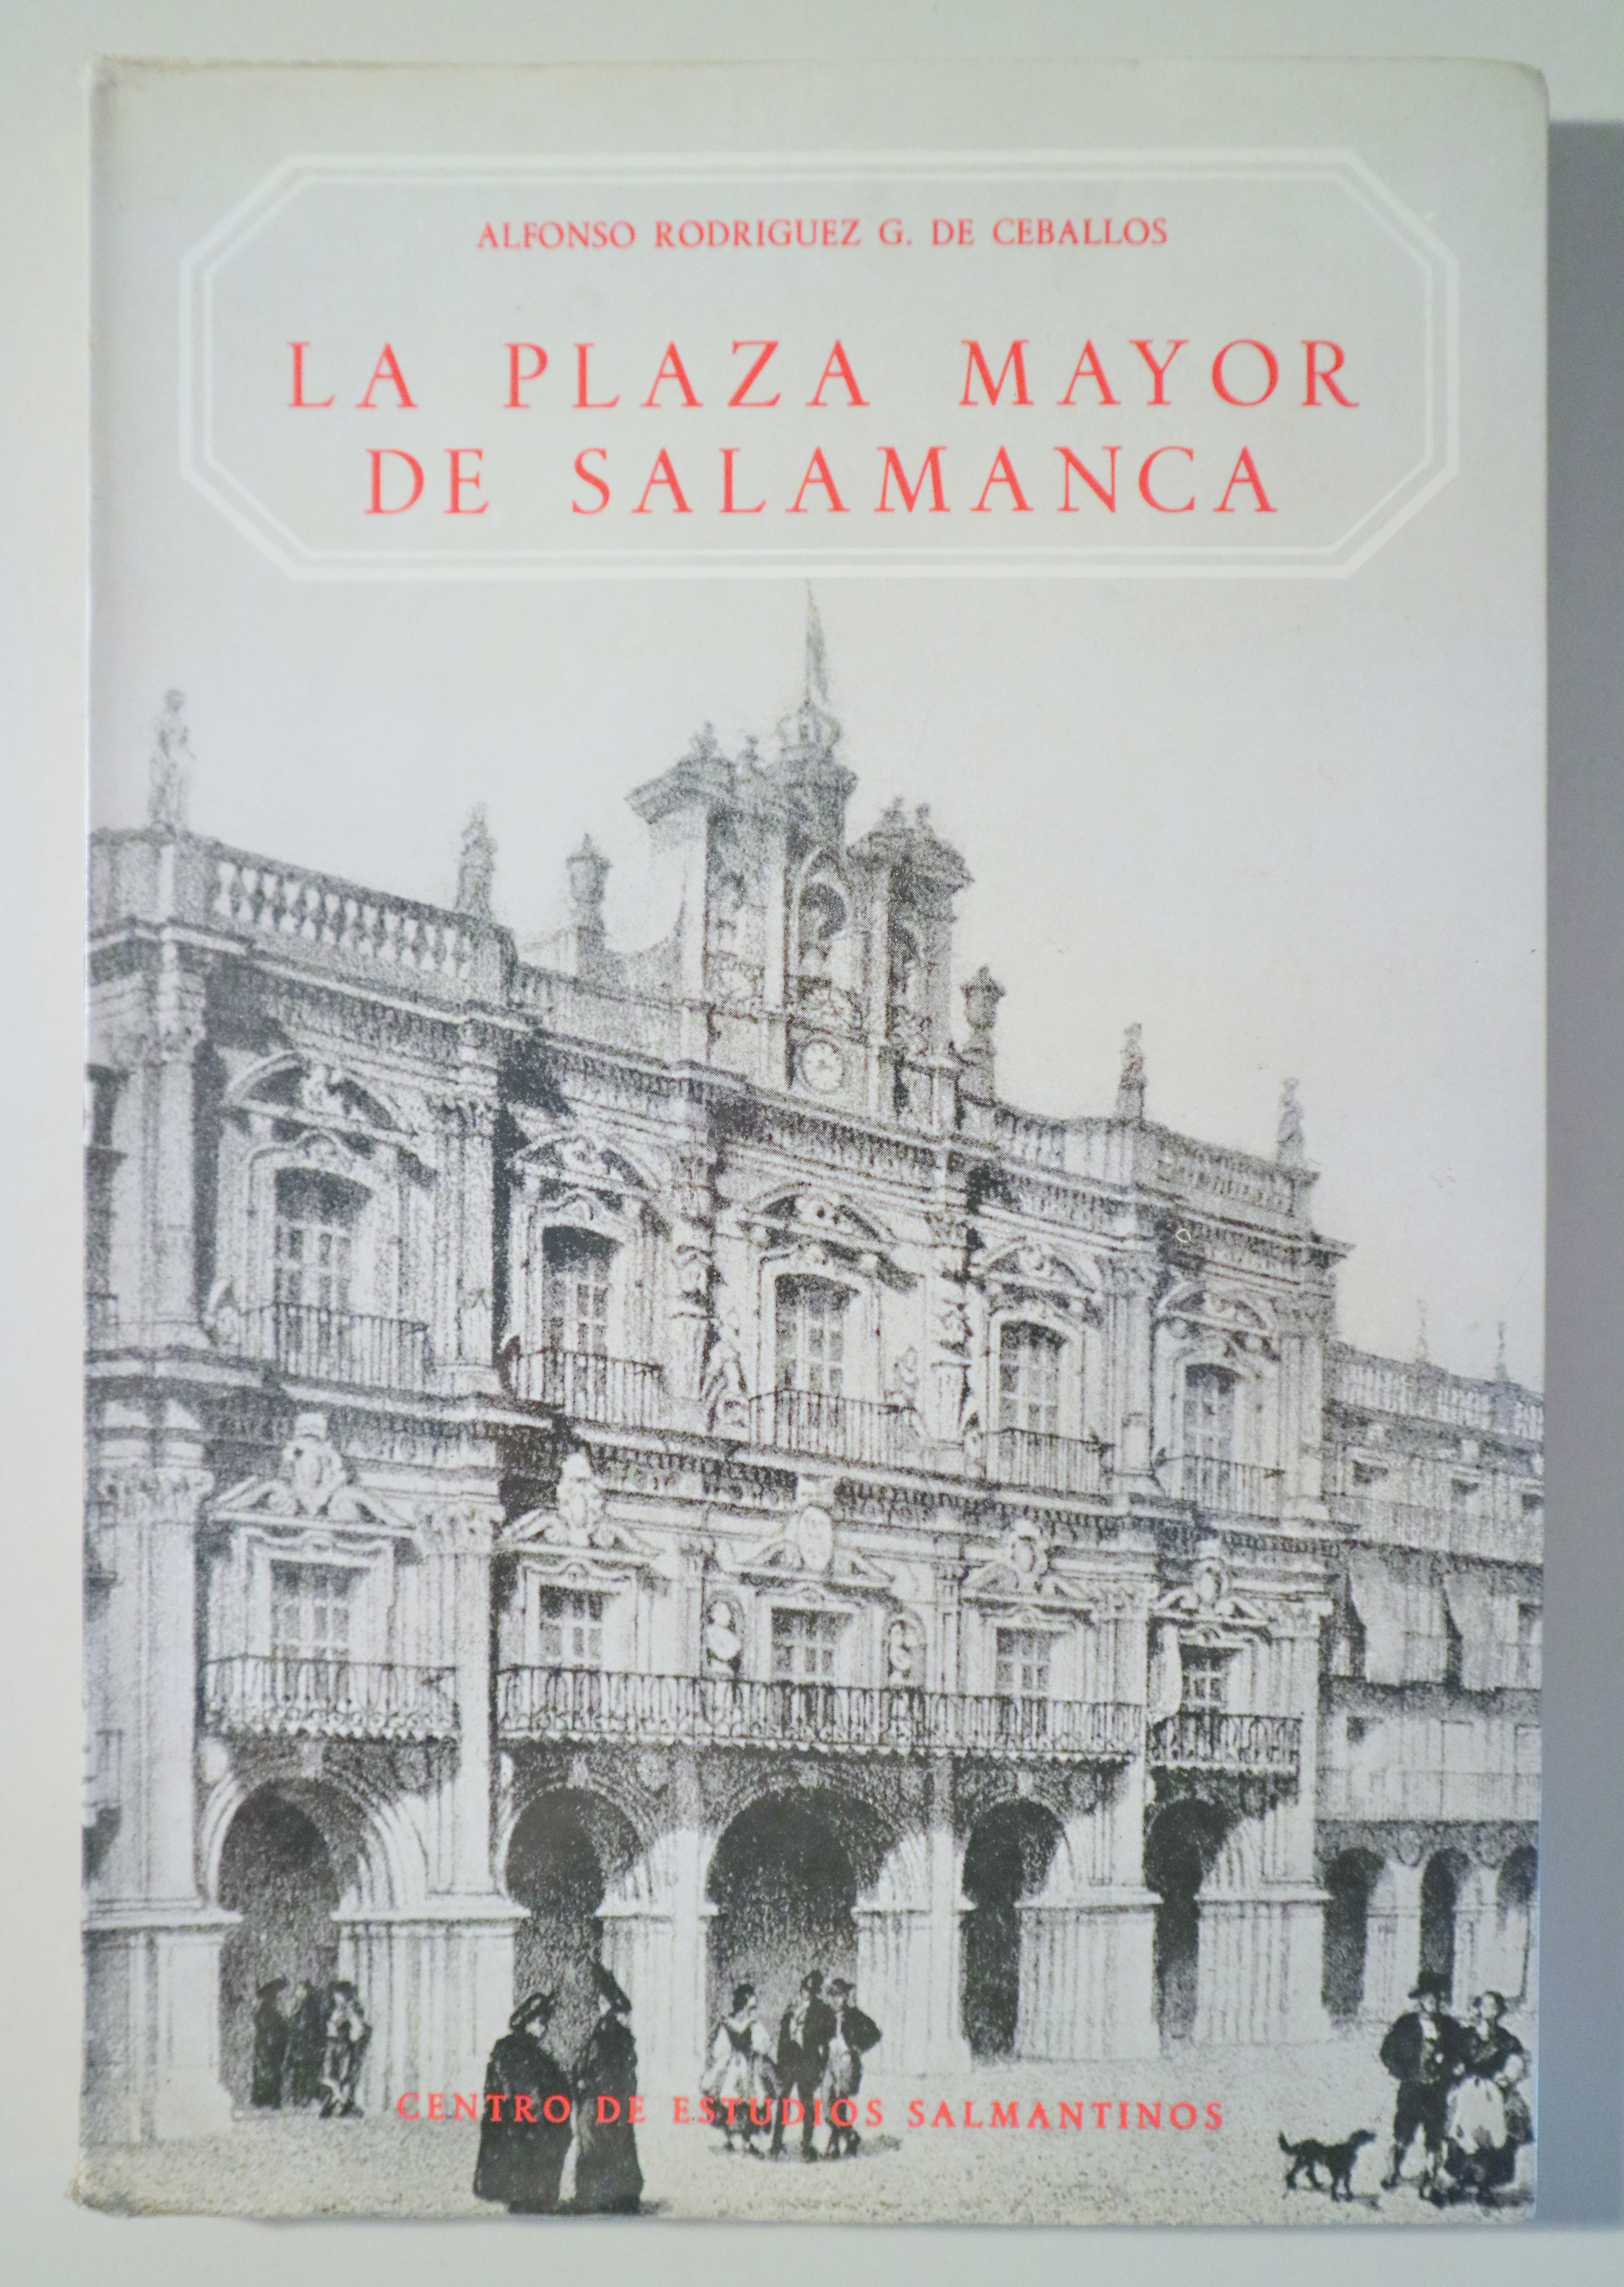 LA PLAZA MAYOR DE SALAMANCA - Salamanca 1977 - Muy ilustrado